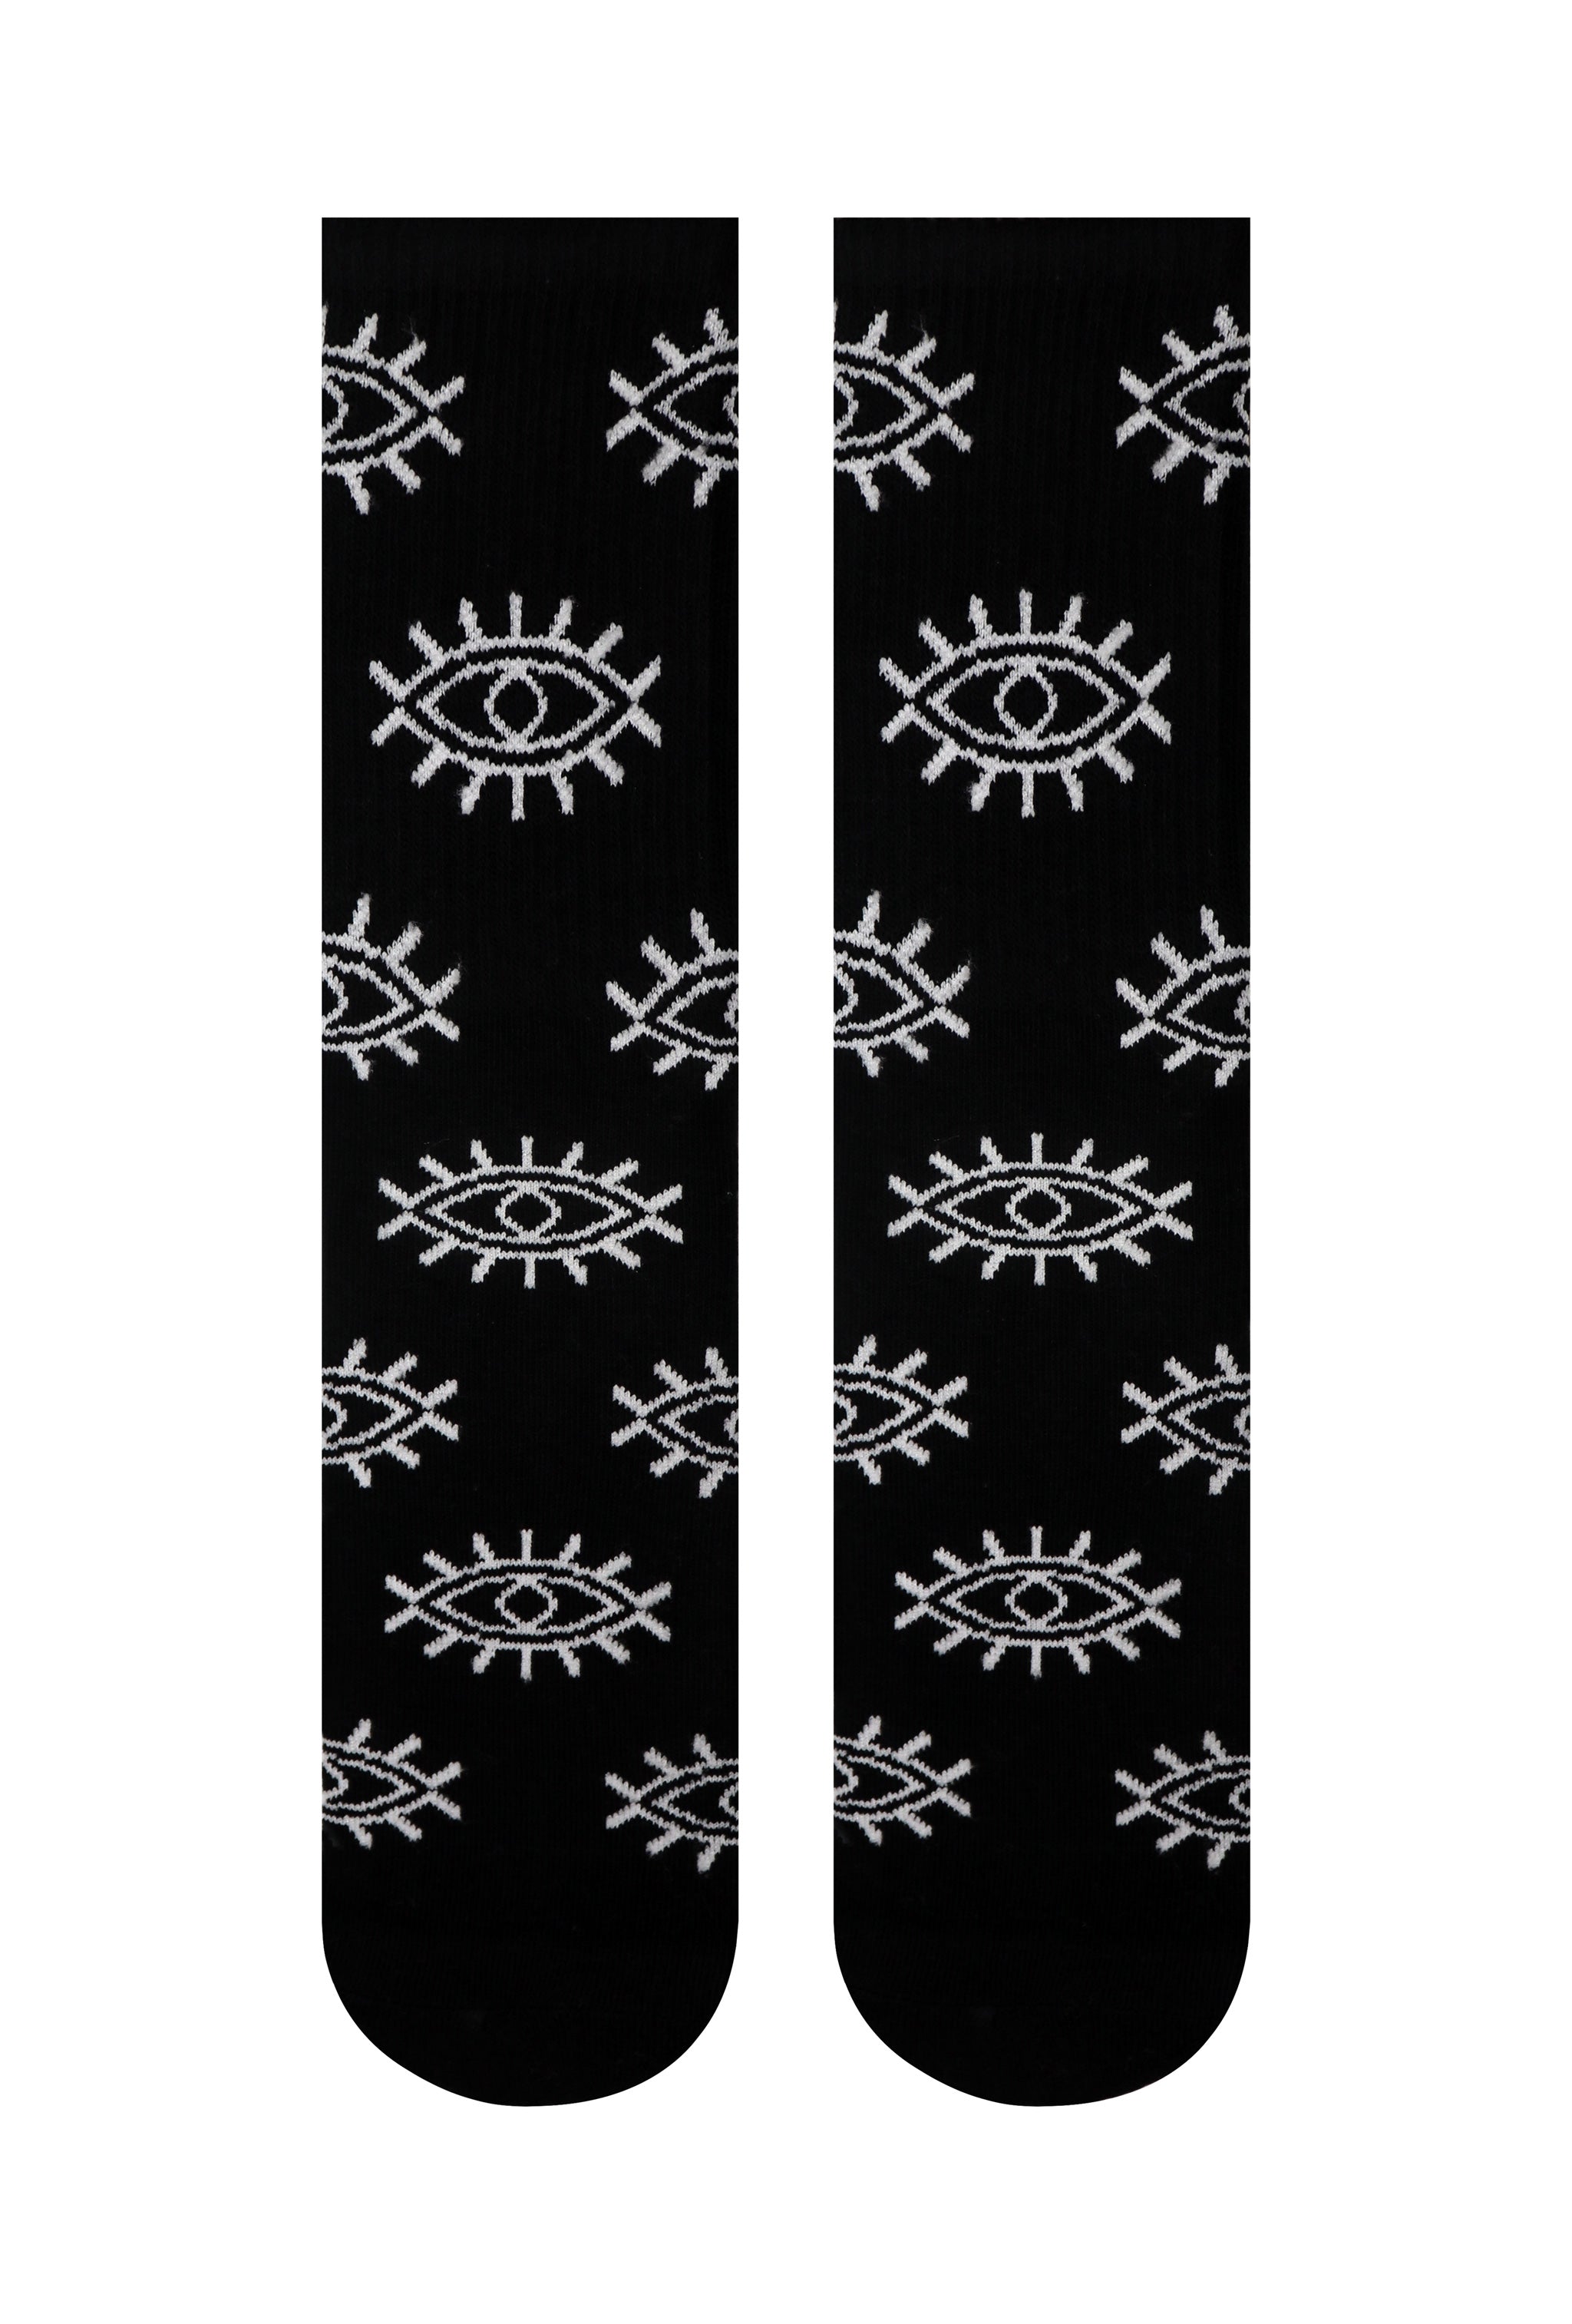 Illuminati Eye Crew Socks